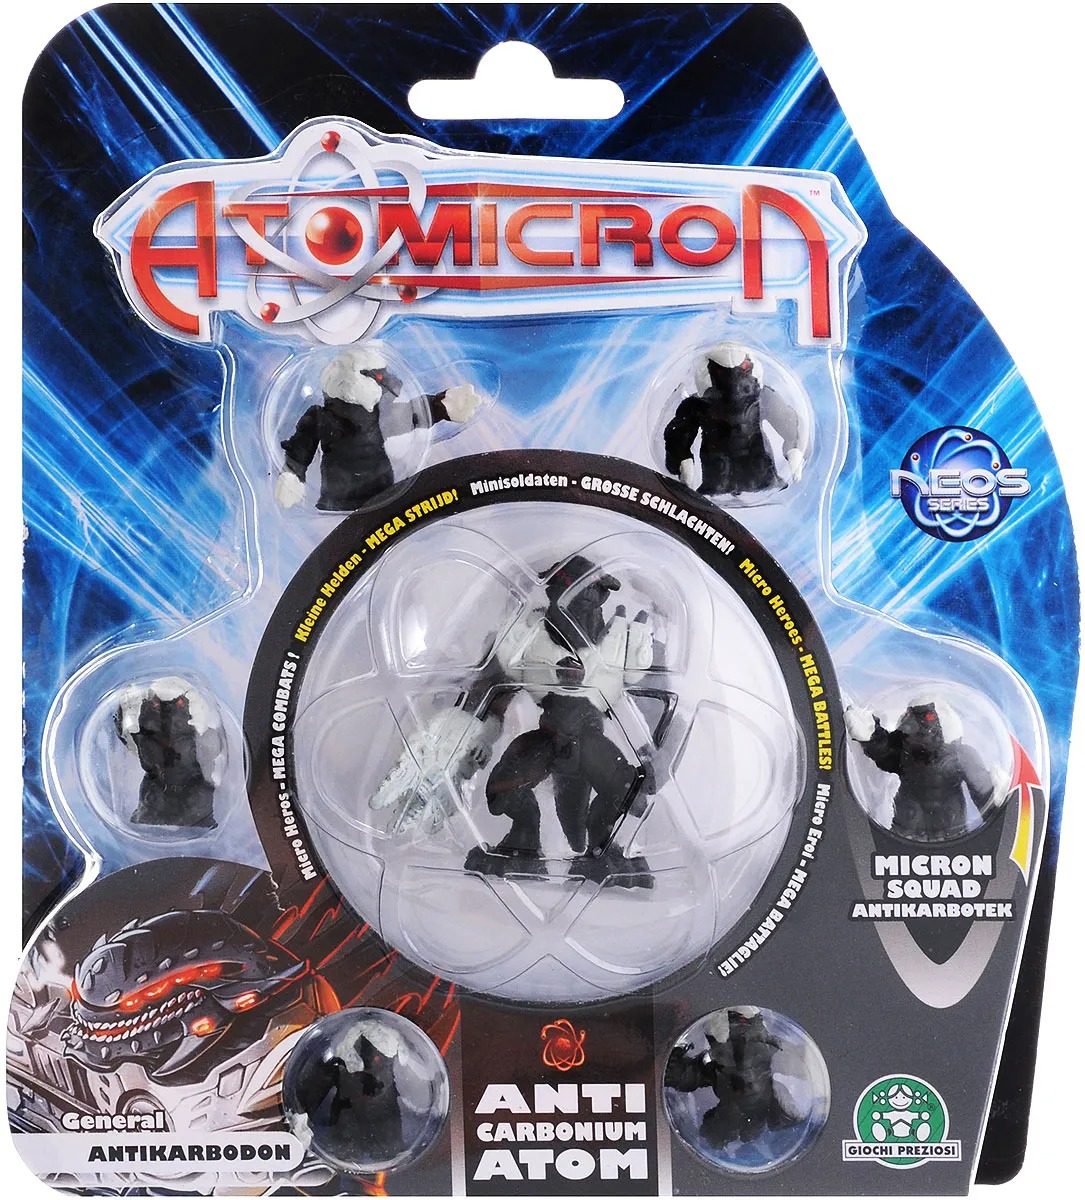 Набор фигурок Atomicron General Anticarbodon 7 шт игровой набор atomicron космический корабль xenon atom красный